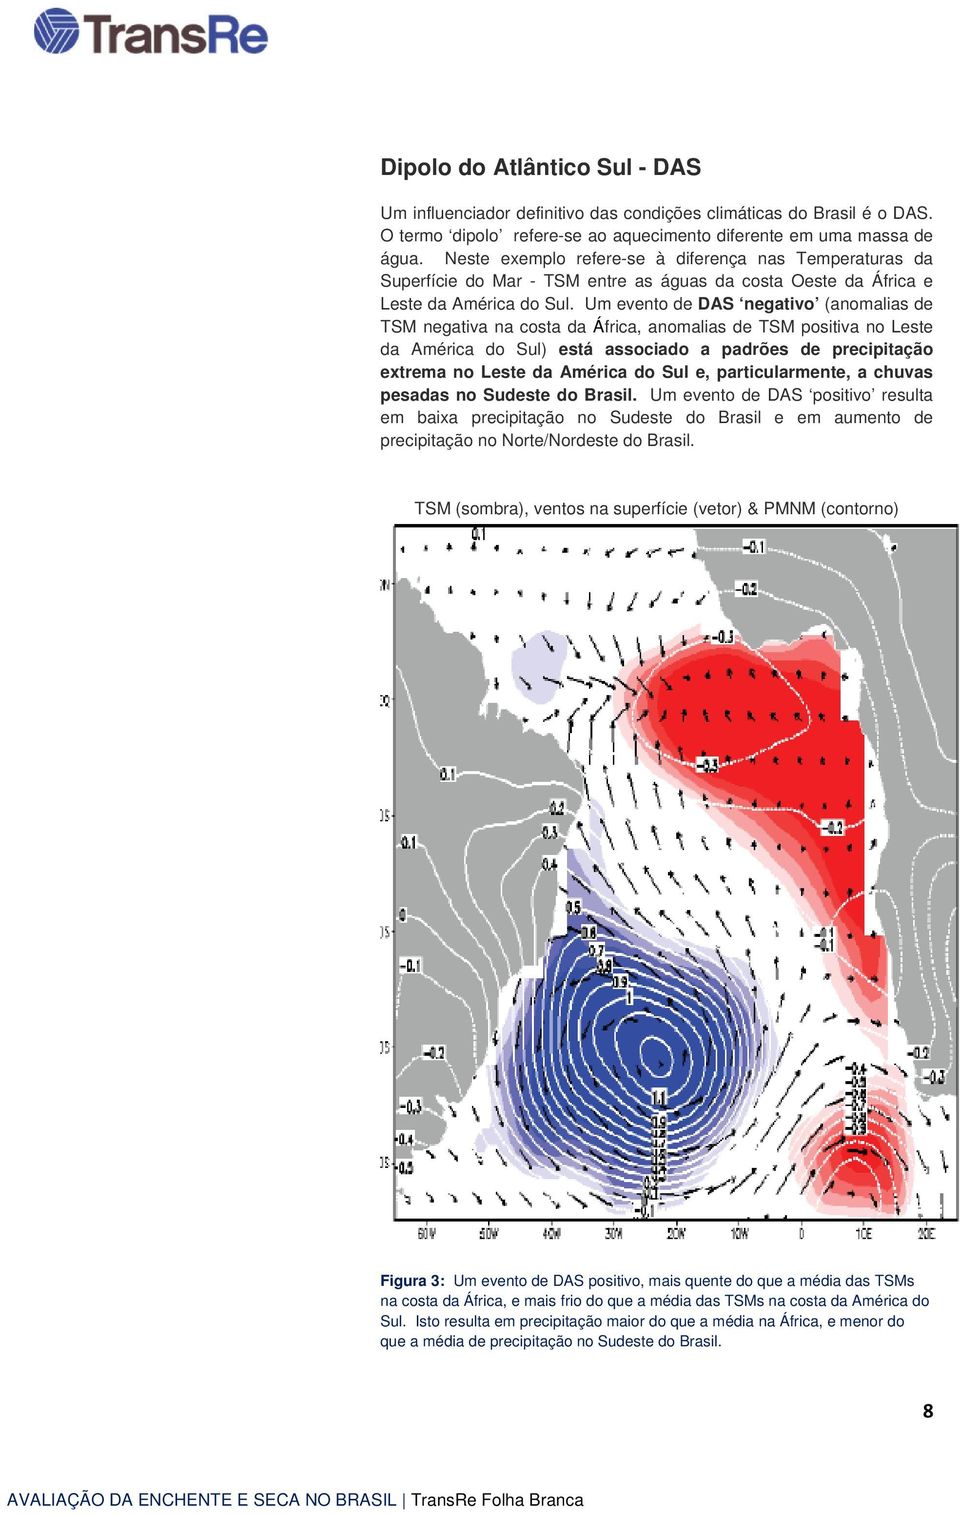 Um evento de DAS negativo (anomalias de TSM negativa na costa da África, anomalias de TSM positiva no Leste da América do Sul) está associado a padrões de precipitação extrema no Leste da América do